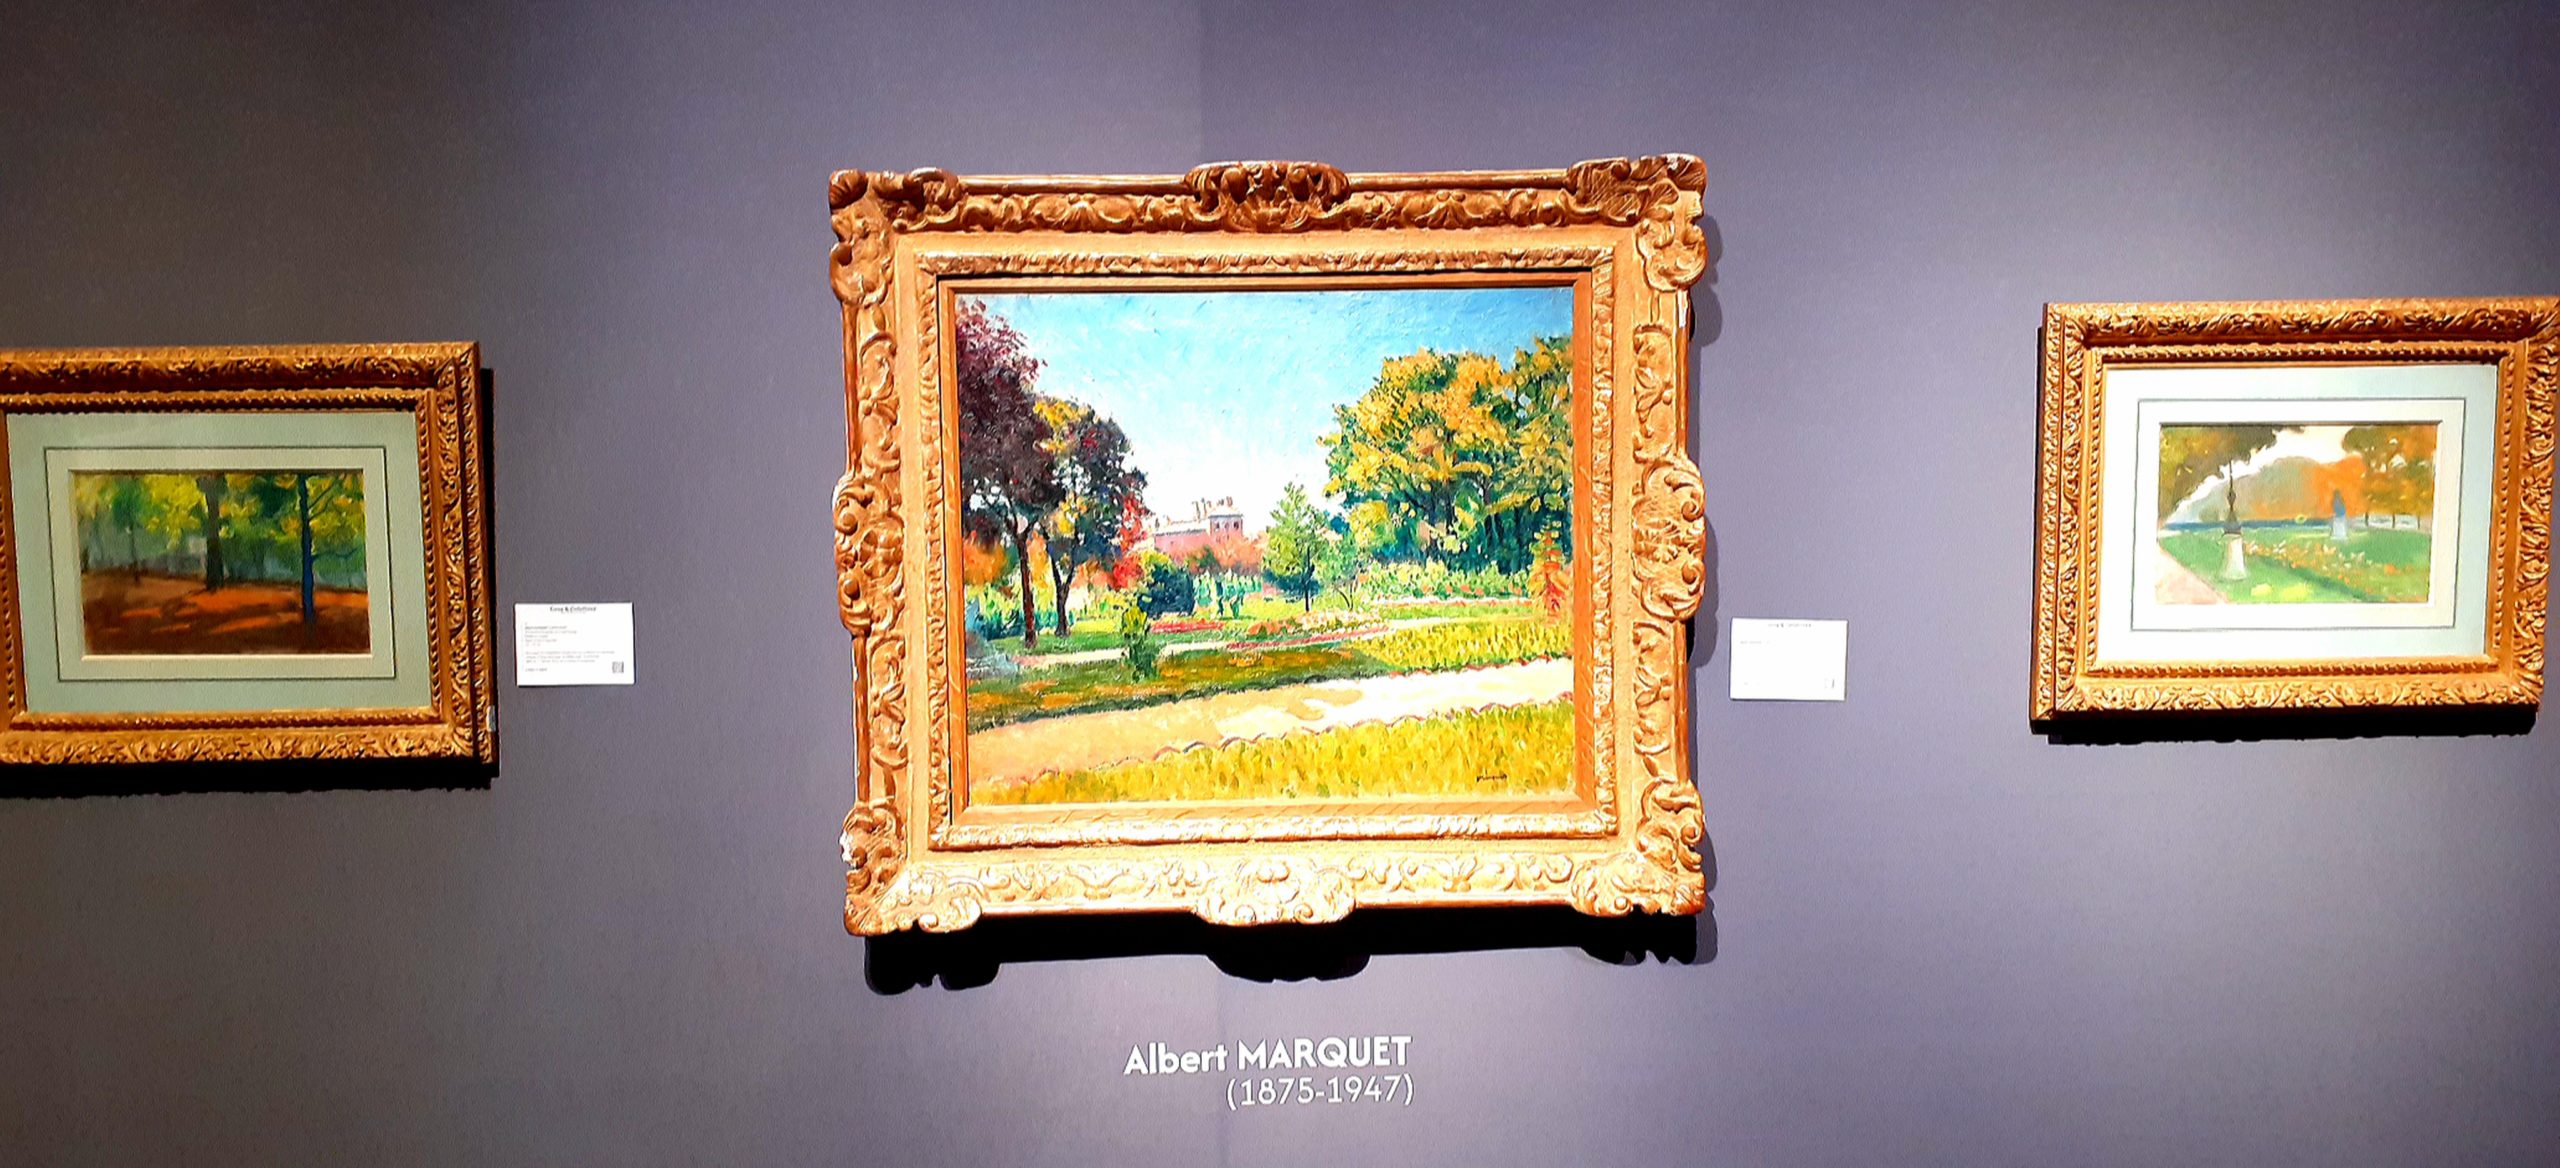 Albert Marquet (1875-1947)